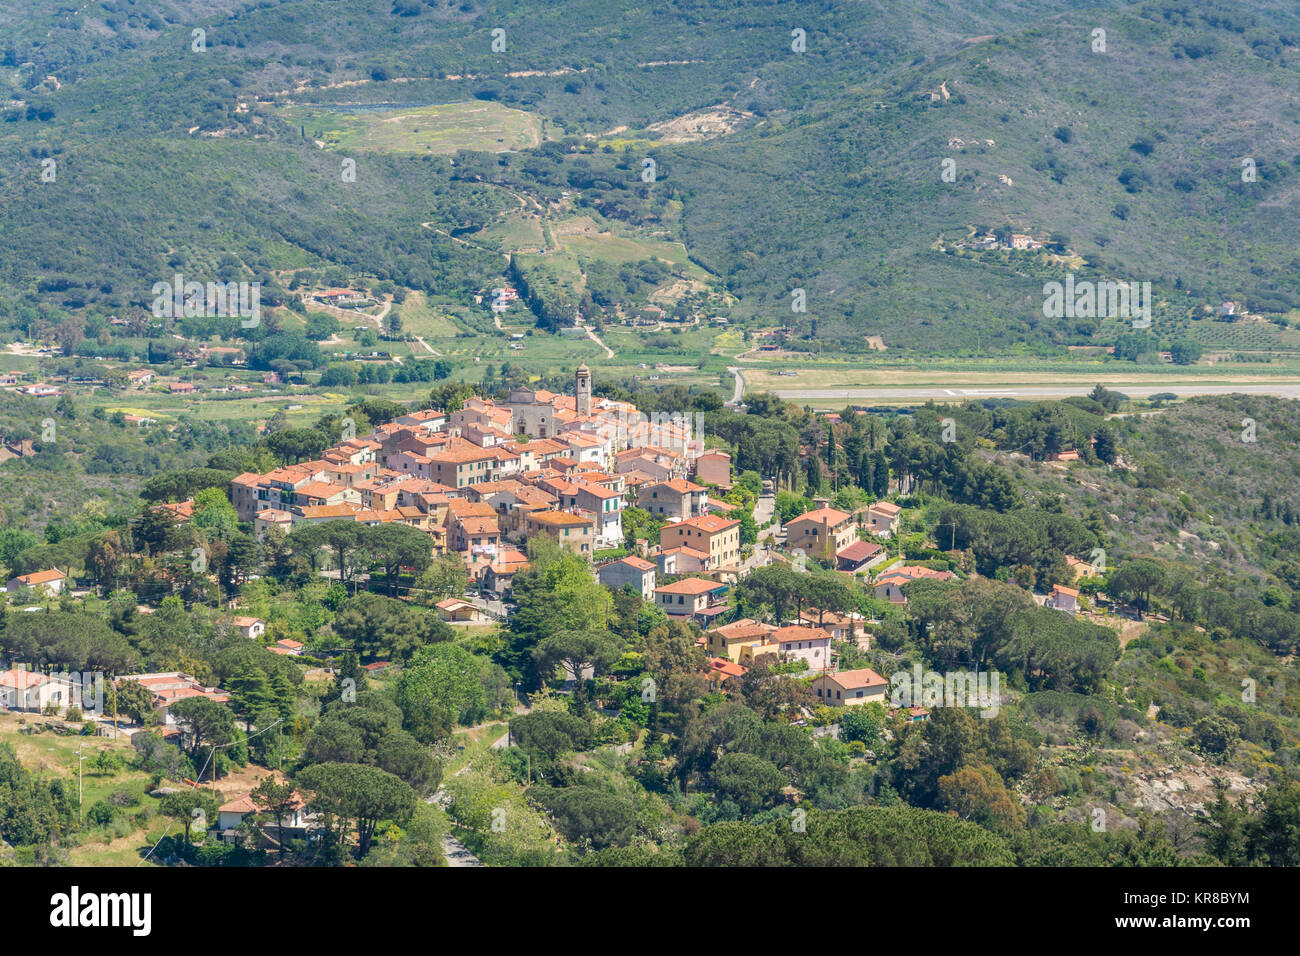 Vue panoramique de Sant ilario village de l'île d'Elbe, Toscane, Italie. Banque D'Images